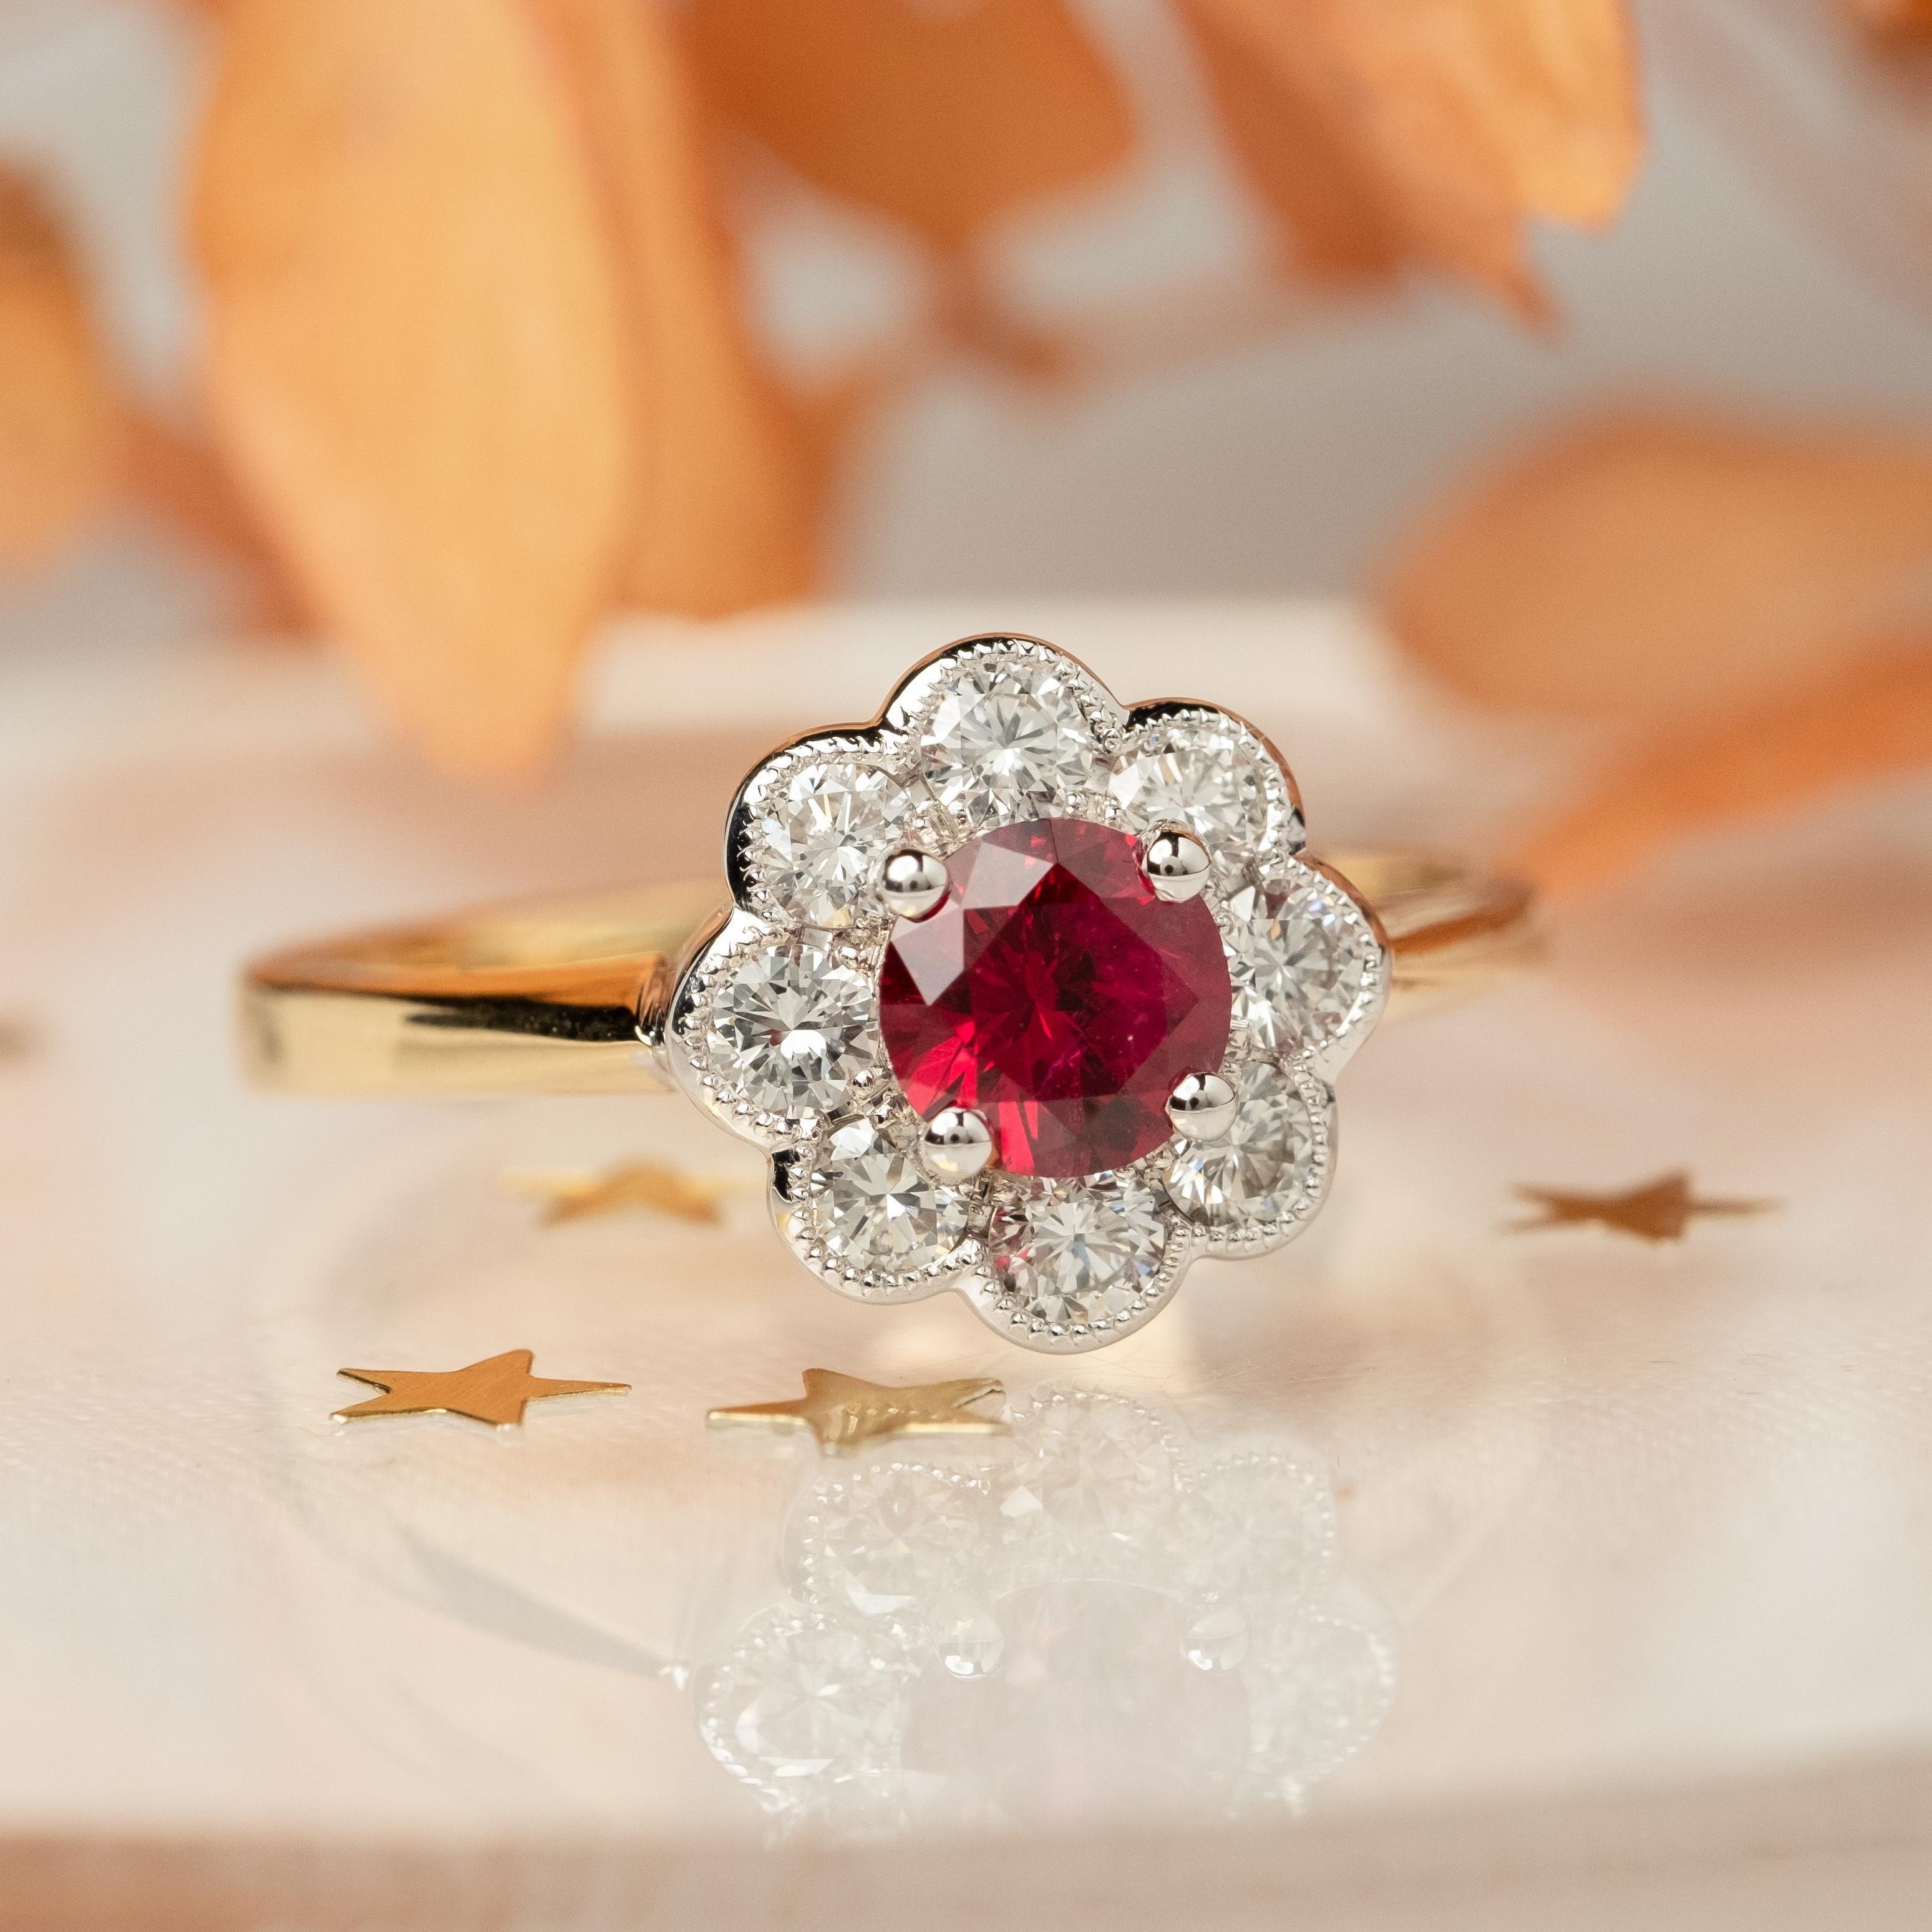 Rubin und Diamant  Cluster-Ring

Dieser Rubin in klassischem Design und floralem Look ist von höchster Qualität und leuchtend roter Farbe. 

Ein runder Rubin aus 18 Karat Gold von tiefroter Farbe in einer Fassung mit vier Krallen.
Umgeben von 8